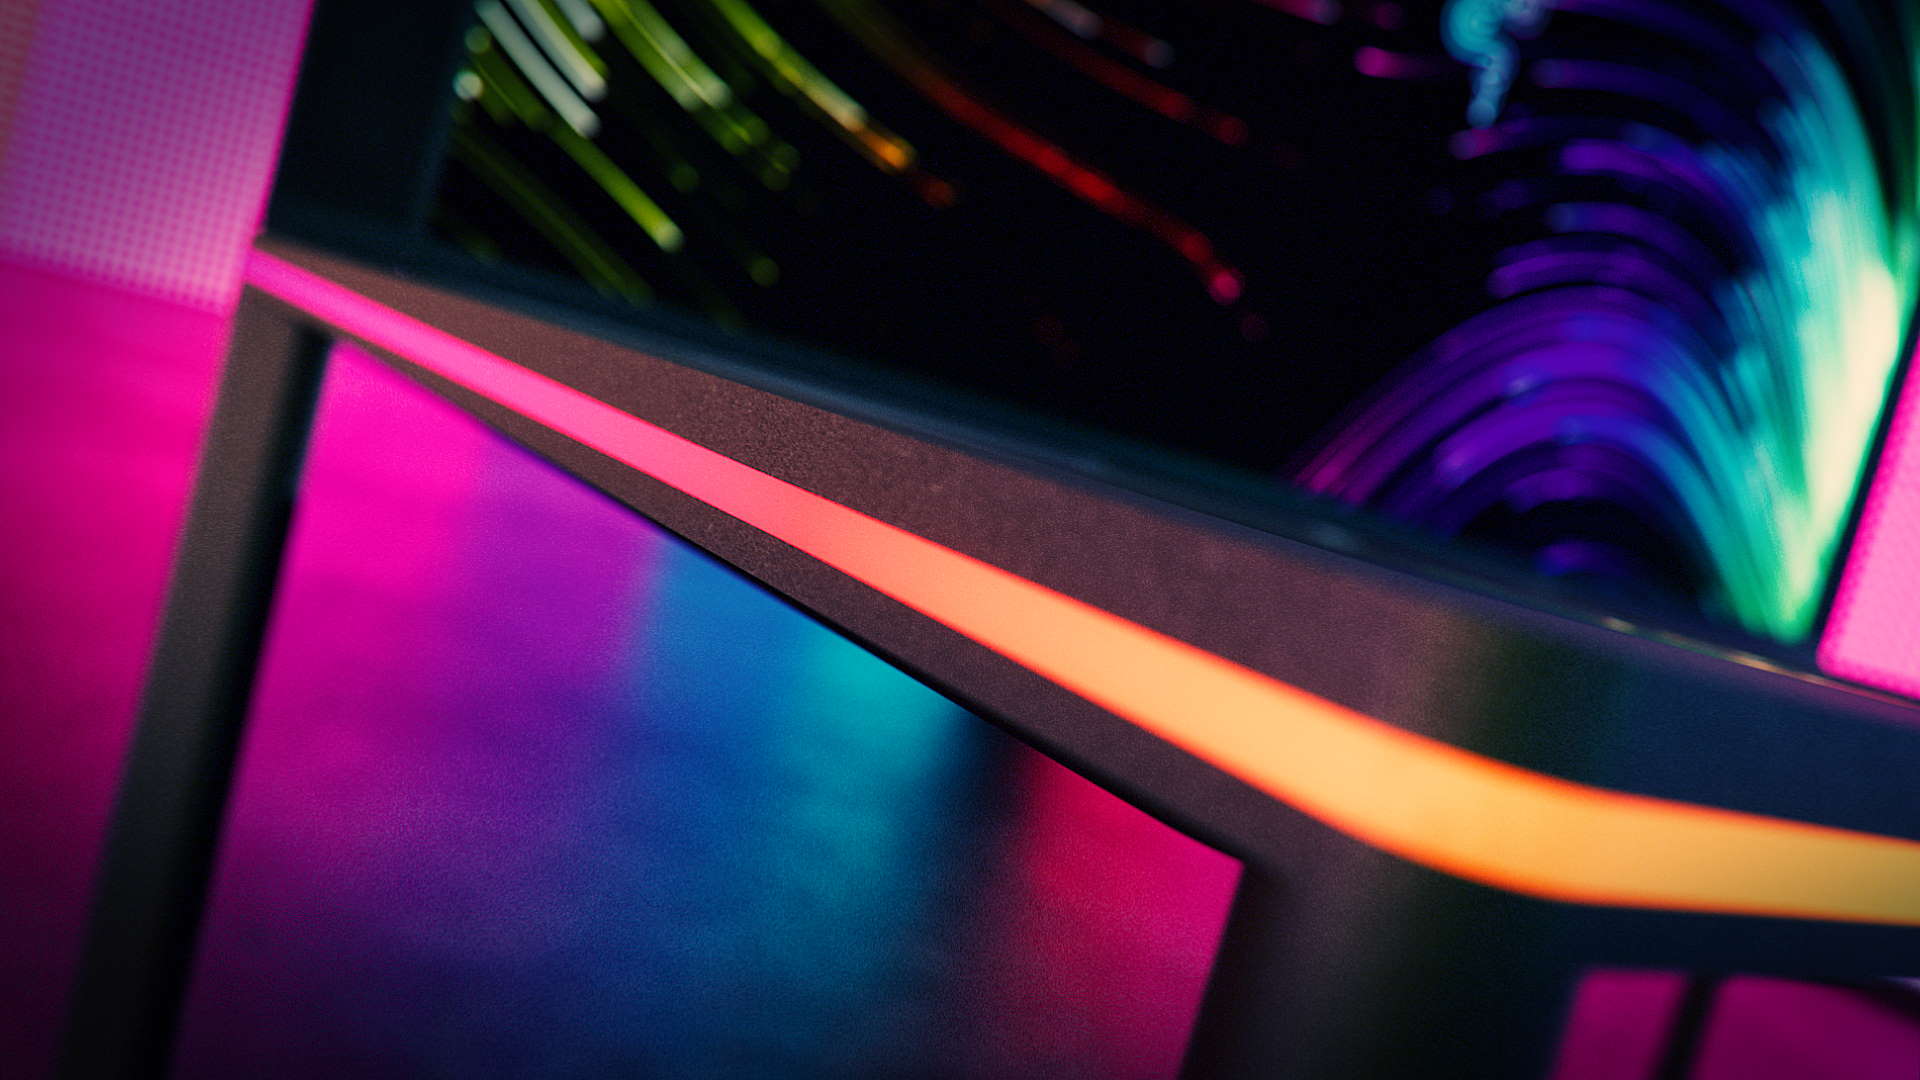 El concepto de escritorio modular de Razer parece una enorme computadora portátil para juegos con patas. Y tengo que tenerlo